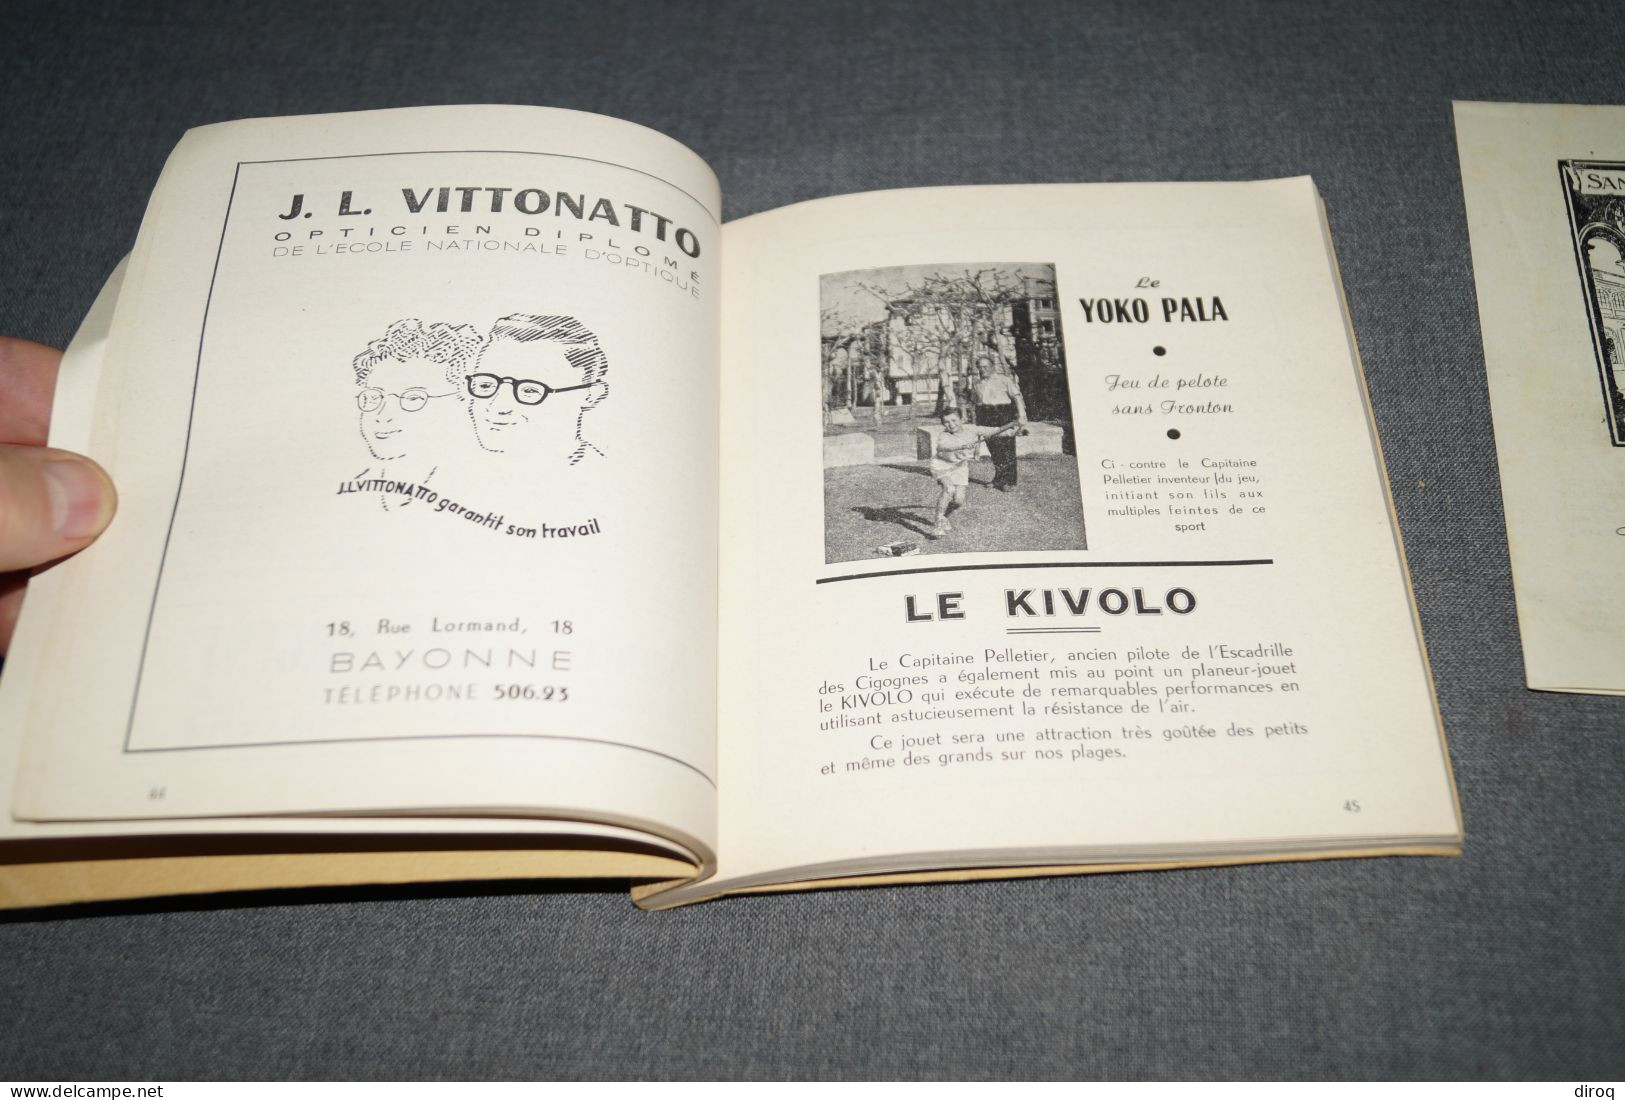 Côte Basque,1950,superbe ancien ouvrage complet,162 pages,16 Cm. sur 15,5 Cm.